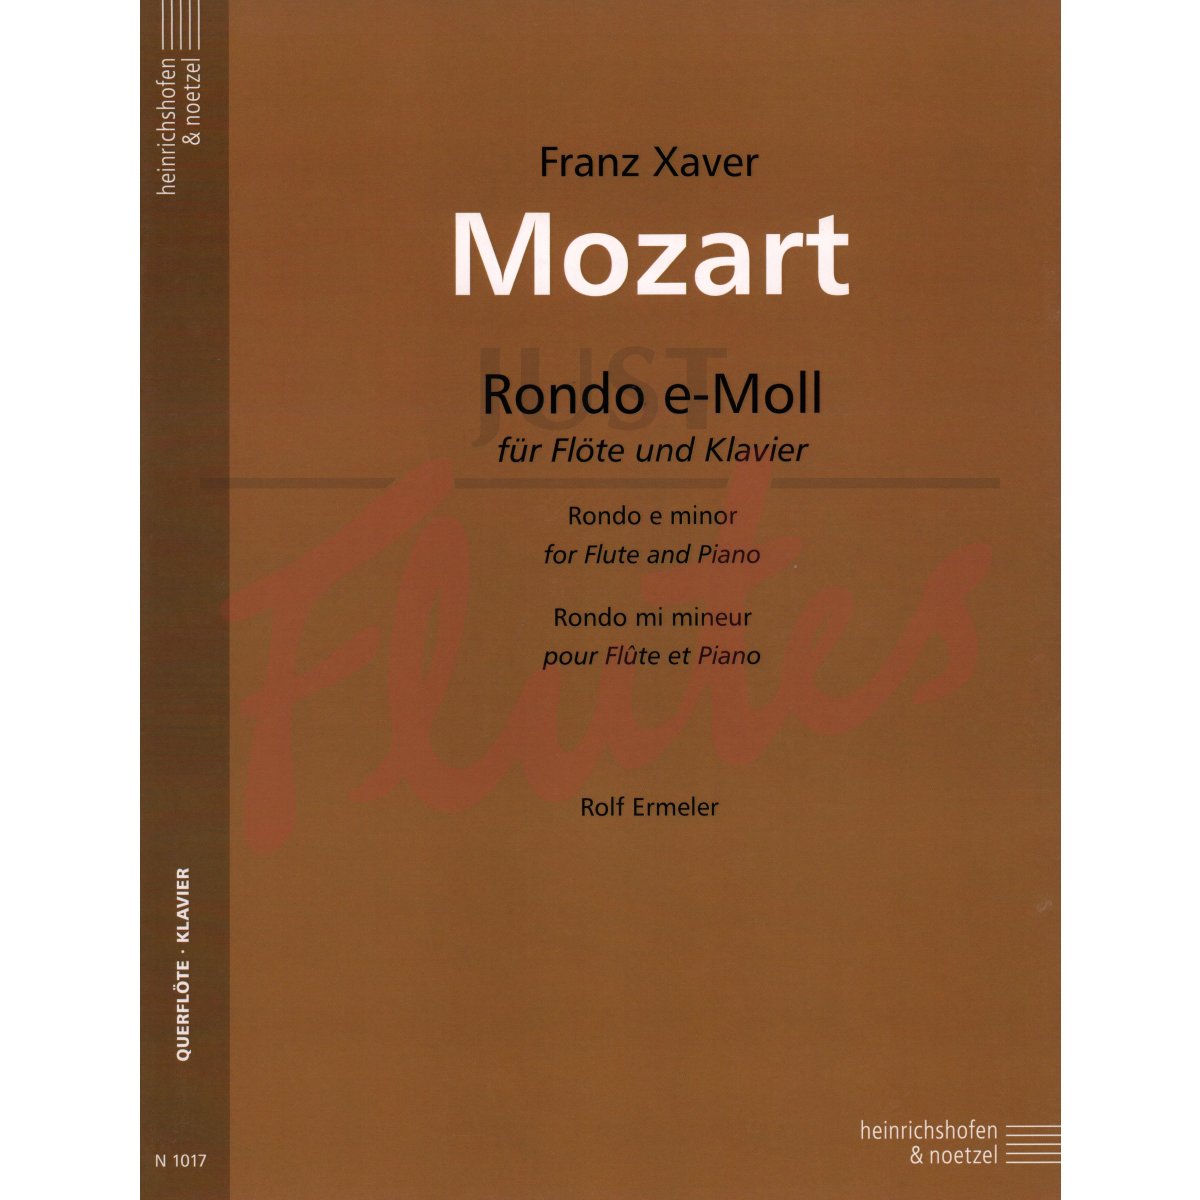 Rondo in E minor for Flute and Piano